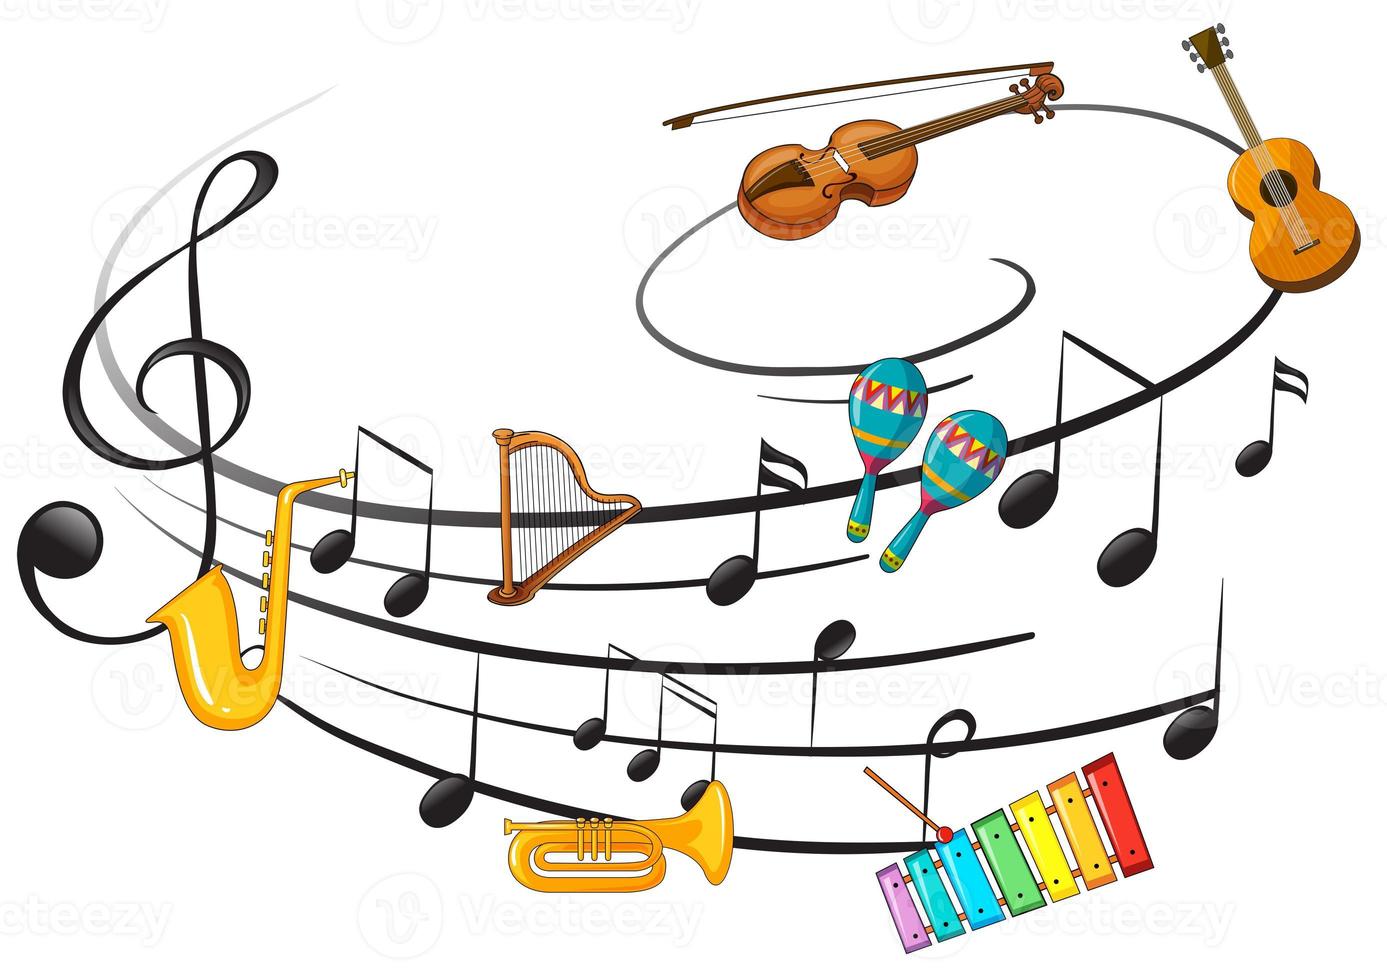 instrumento musical com nota musical foto